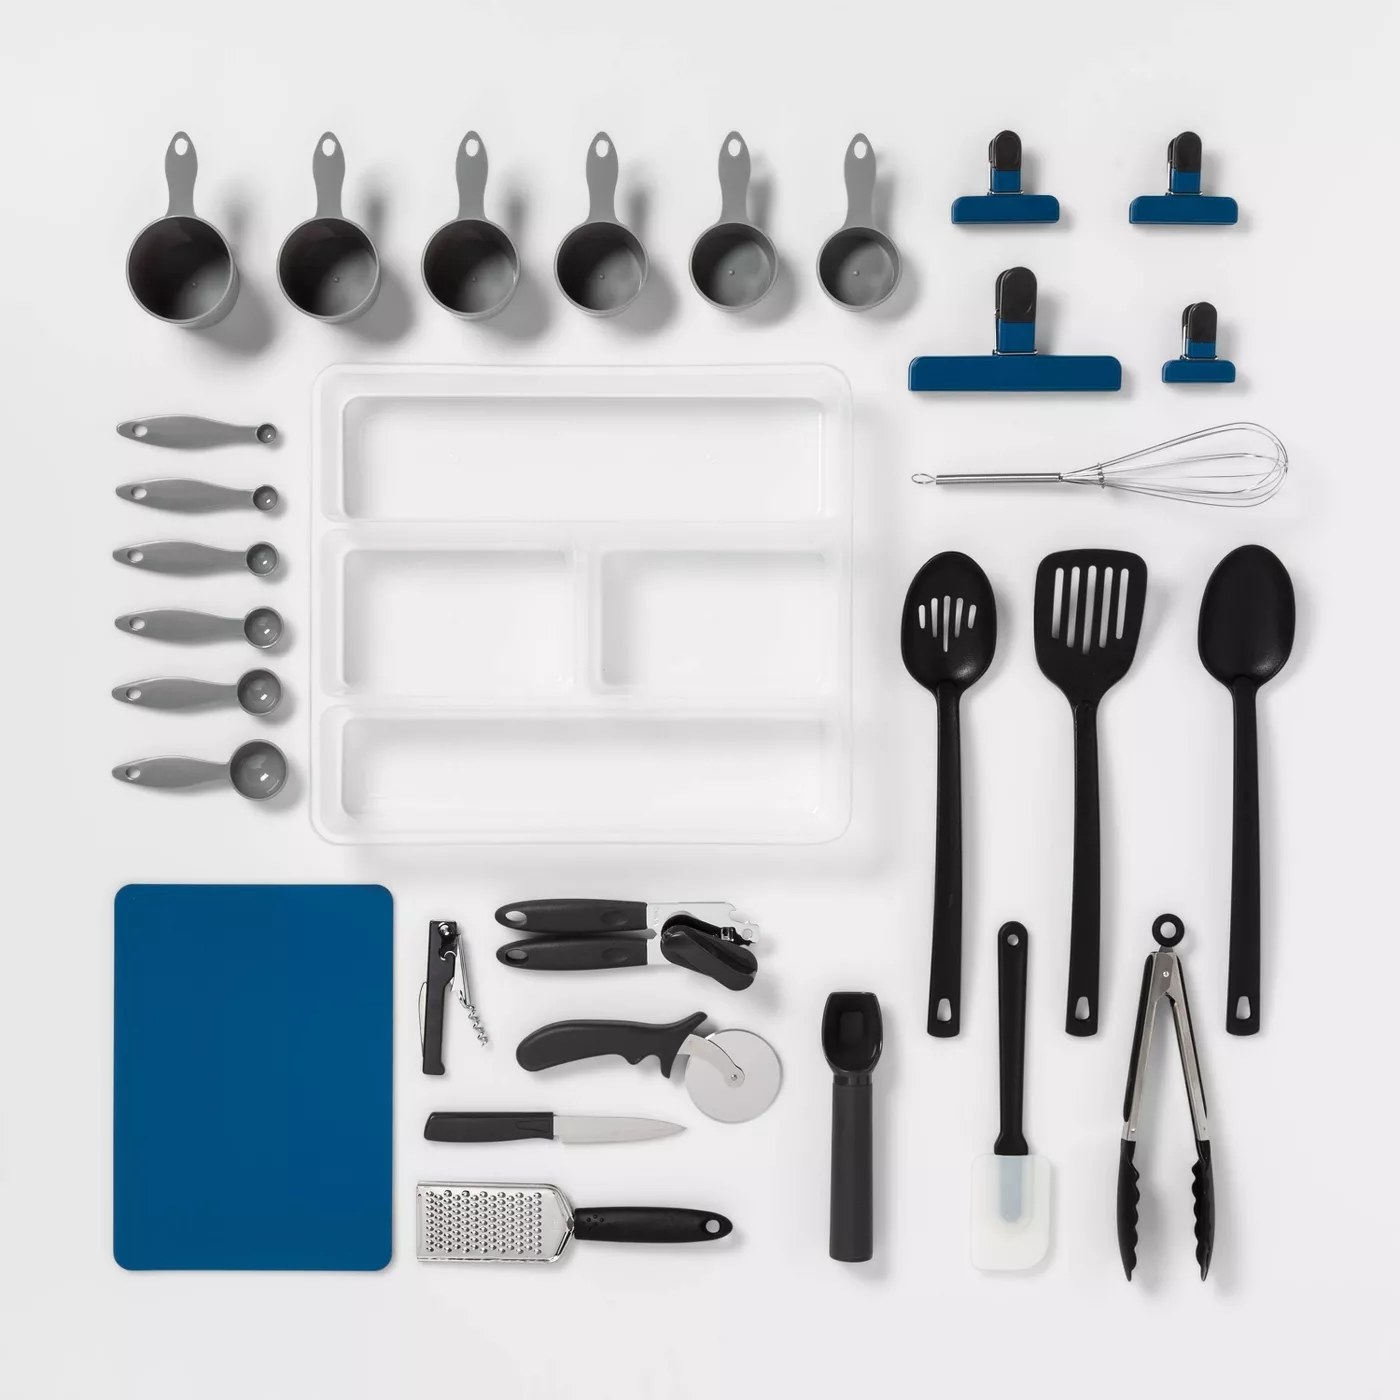 The utensil set